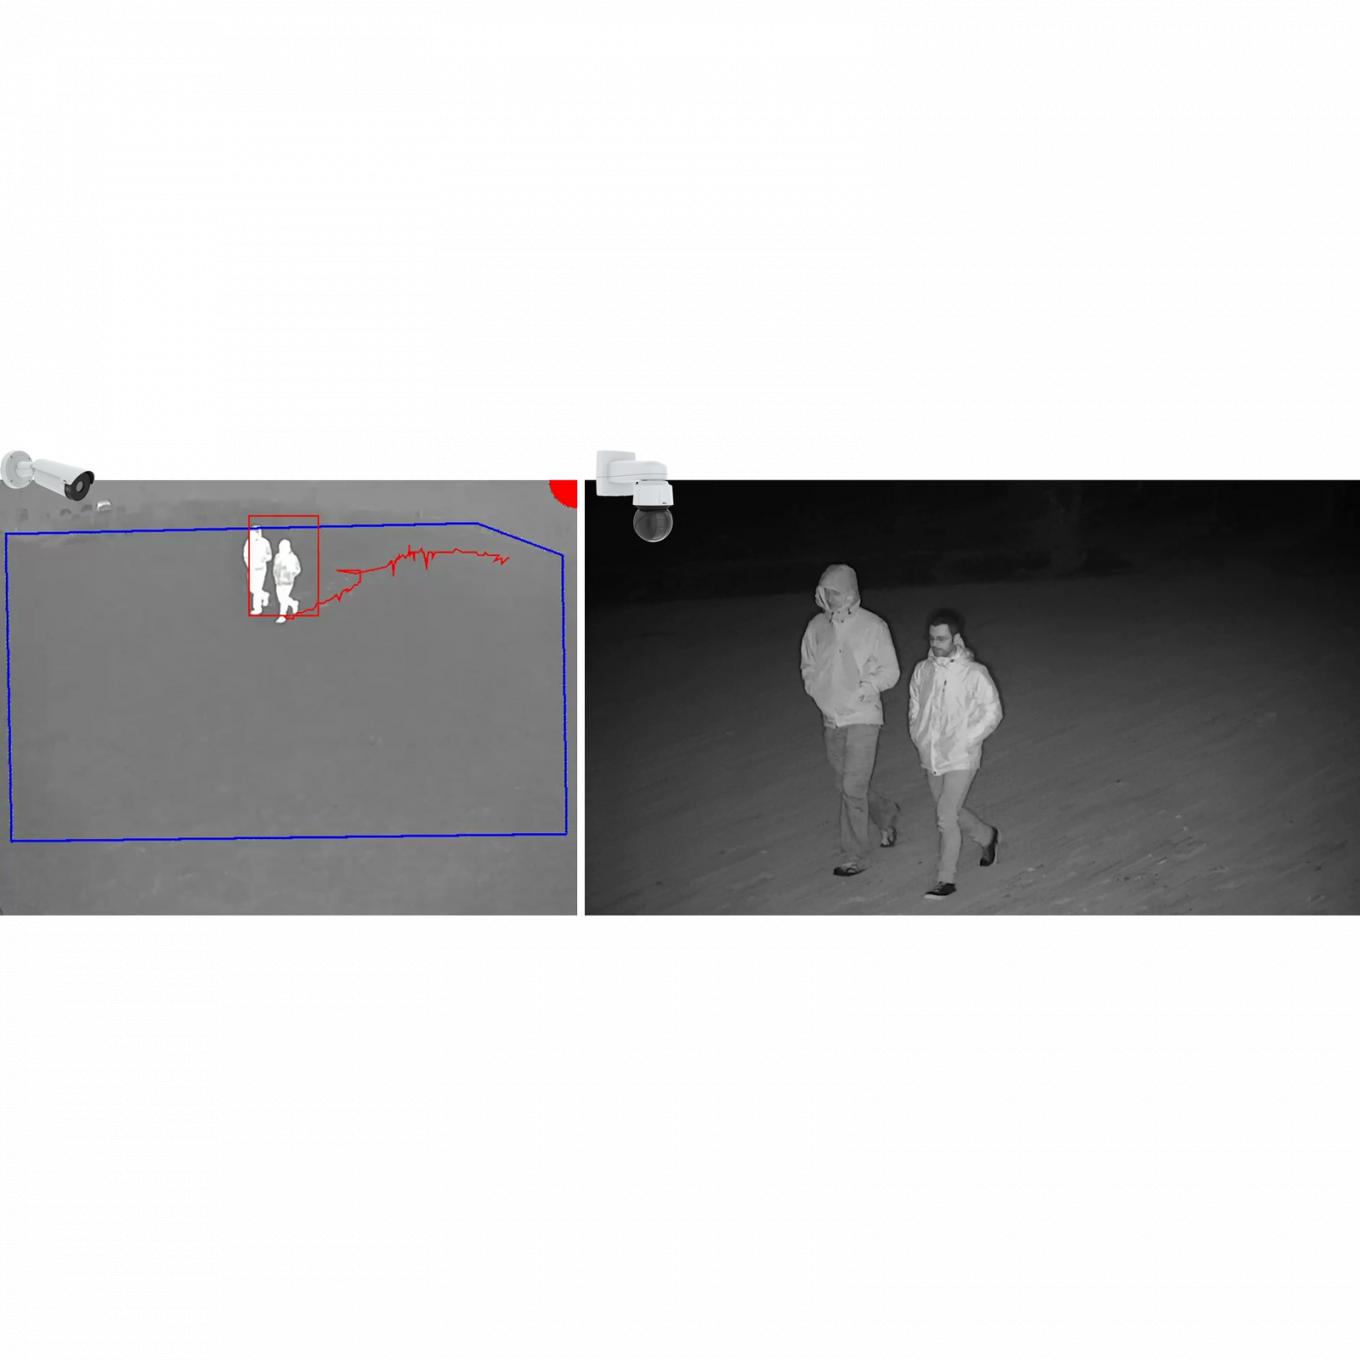 걷고 있는 사람 두 명의 흑백 사진 두 장. 두 대의 카메라가 오른쪽에서 기울어져 있습니다.